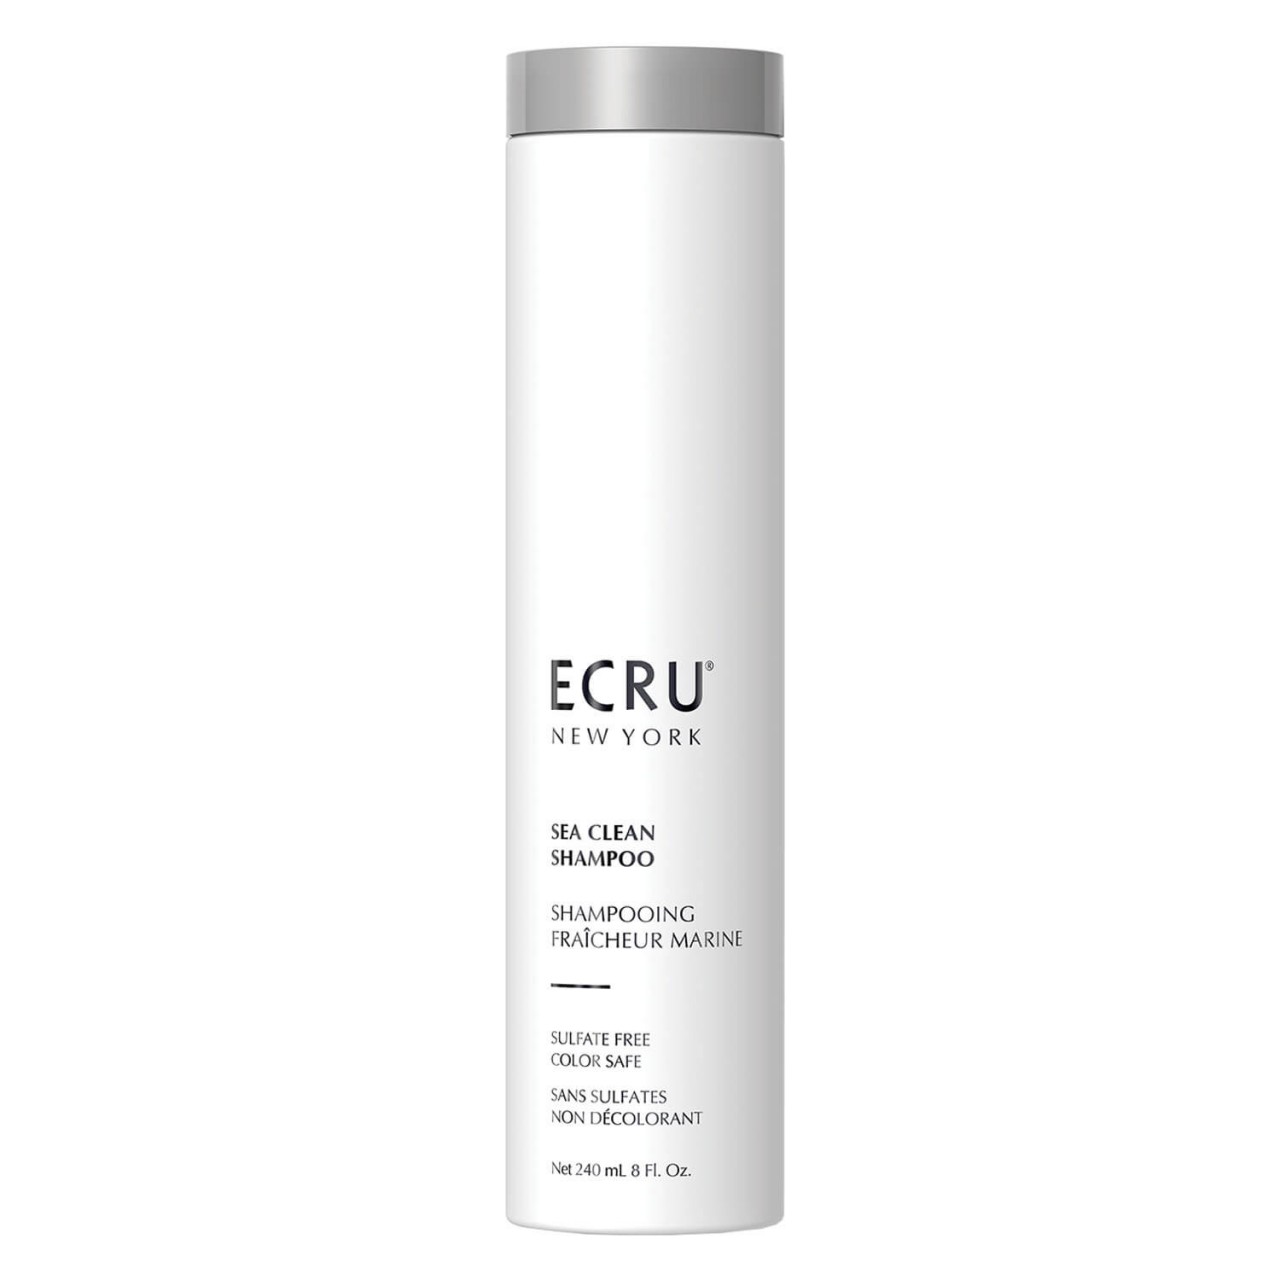 ECRU NY Signature - Sea Clean Shampoo von Ecru New York